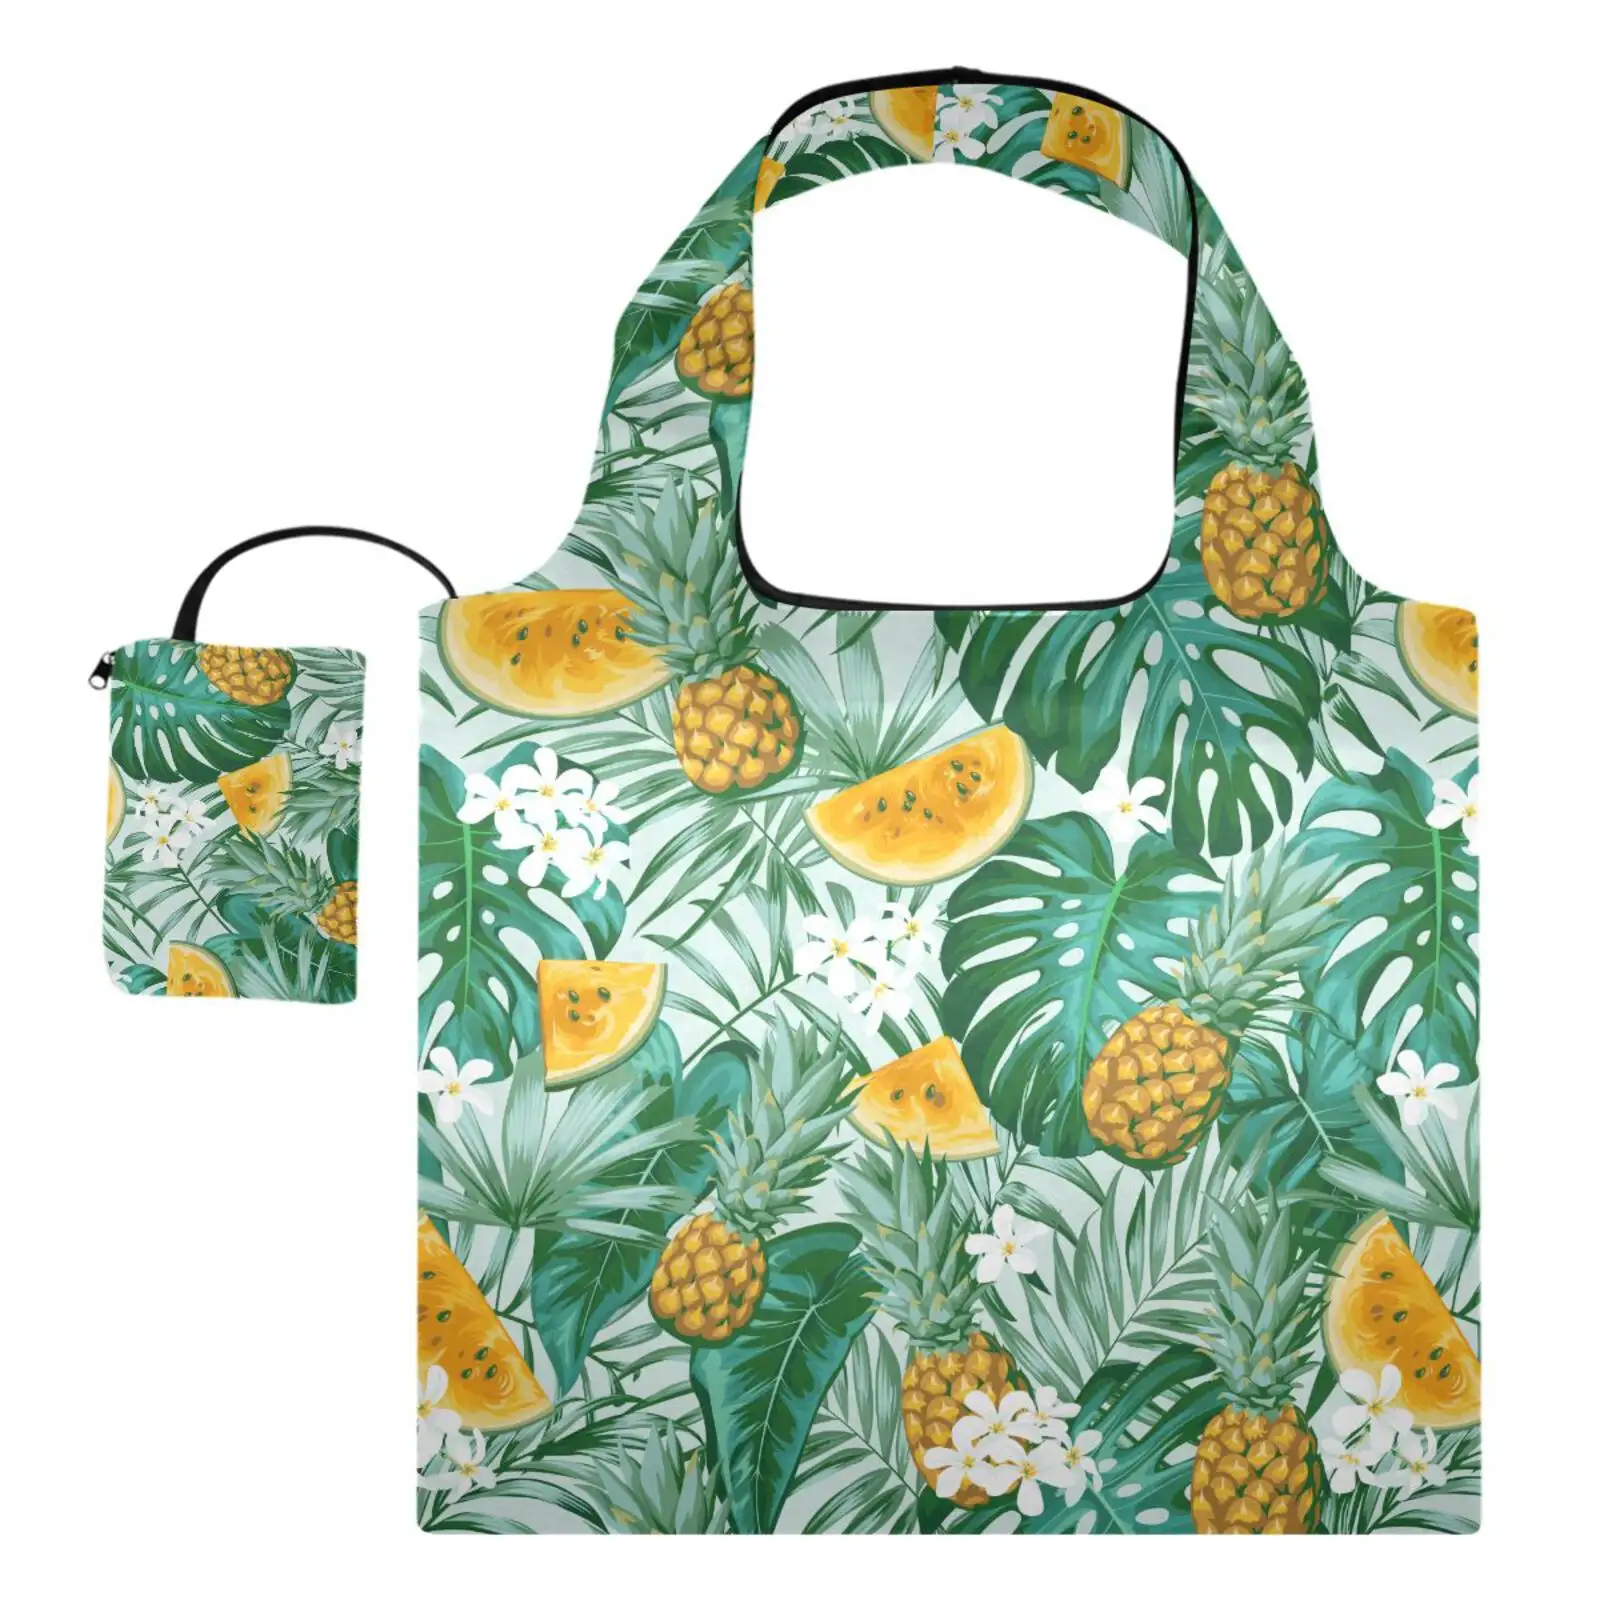 Custom Tropical impresso poliéster Folding Shopping Bag Eco-friendly reutilizáveis mercearia sacos com pequeno saco